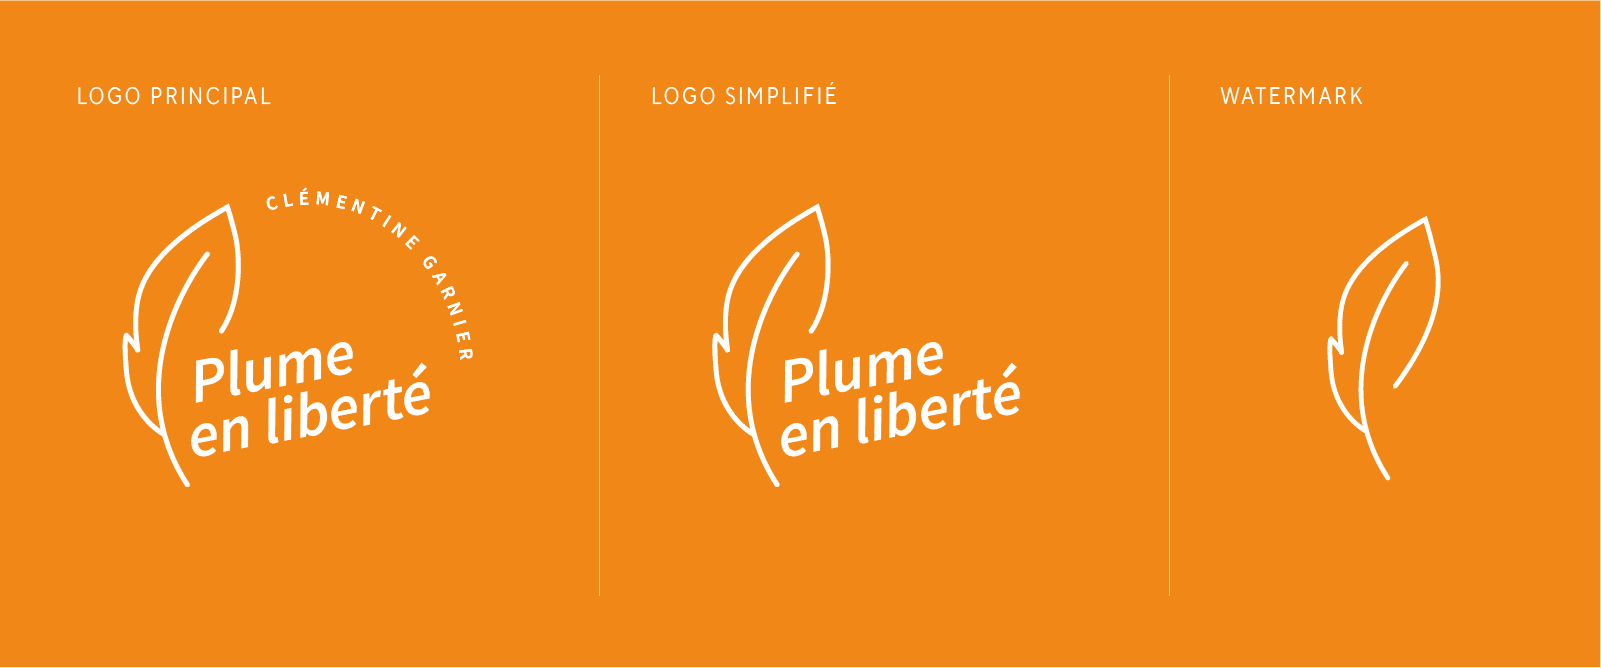 construction logo clementine garnier